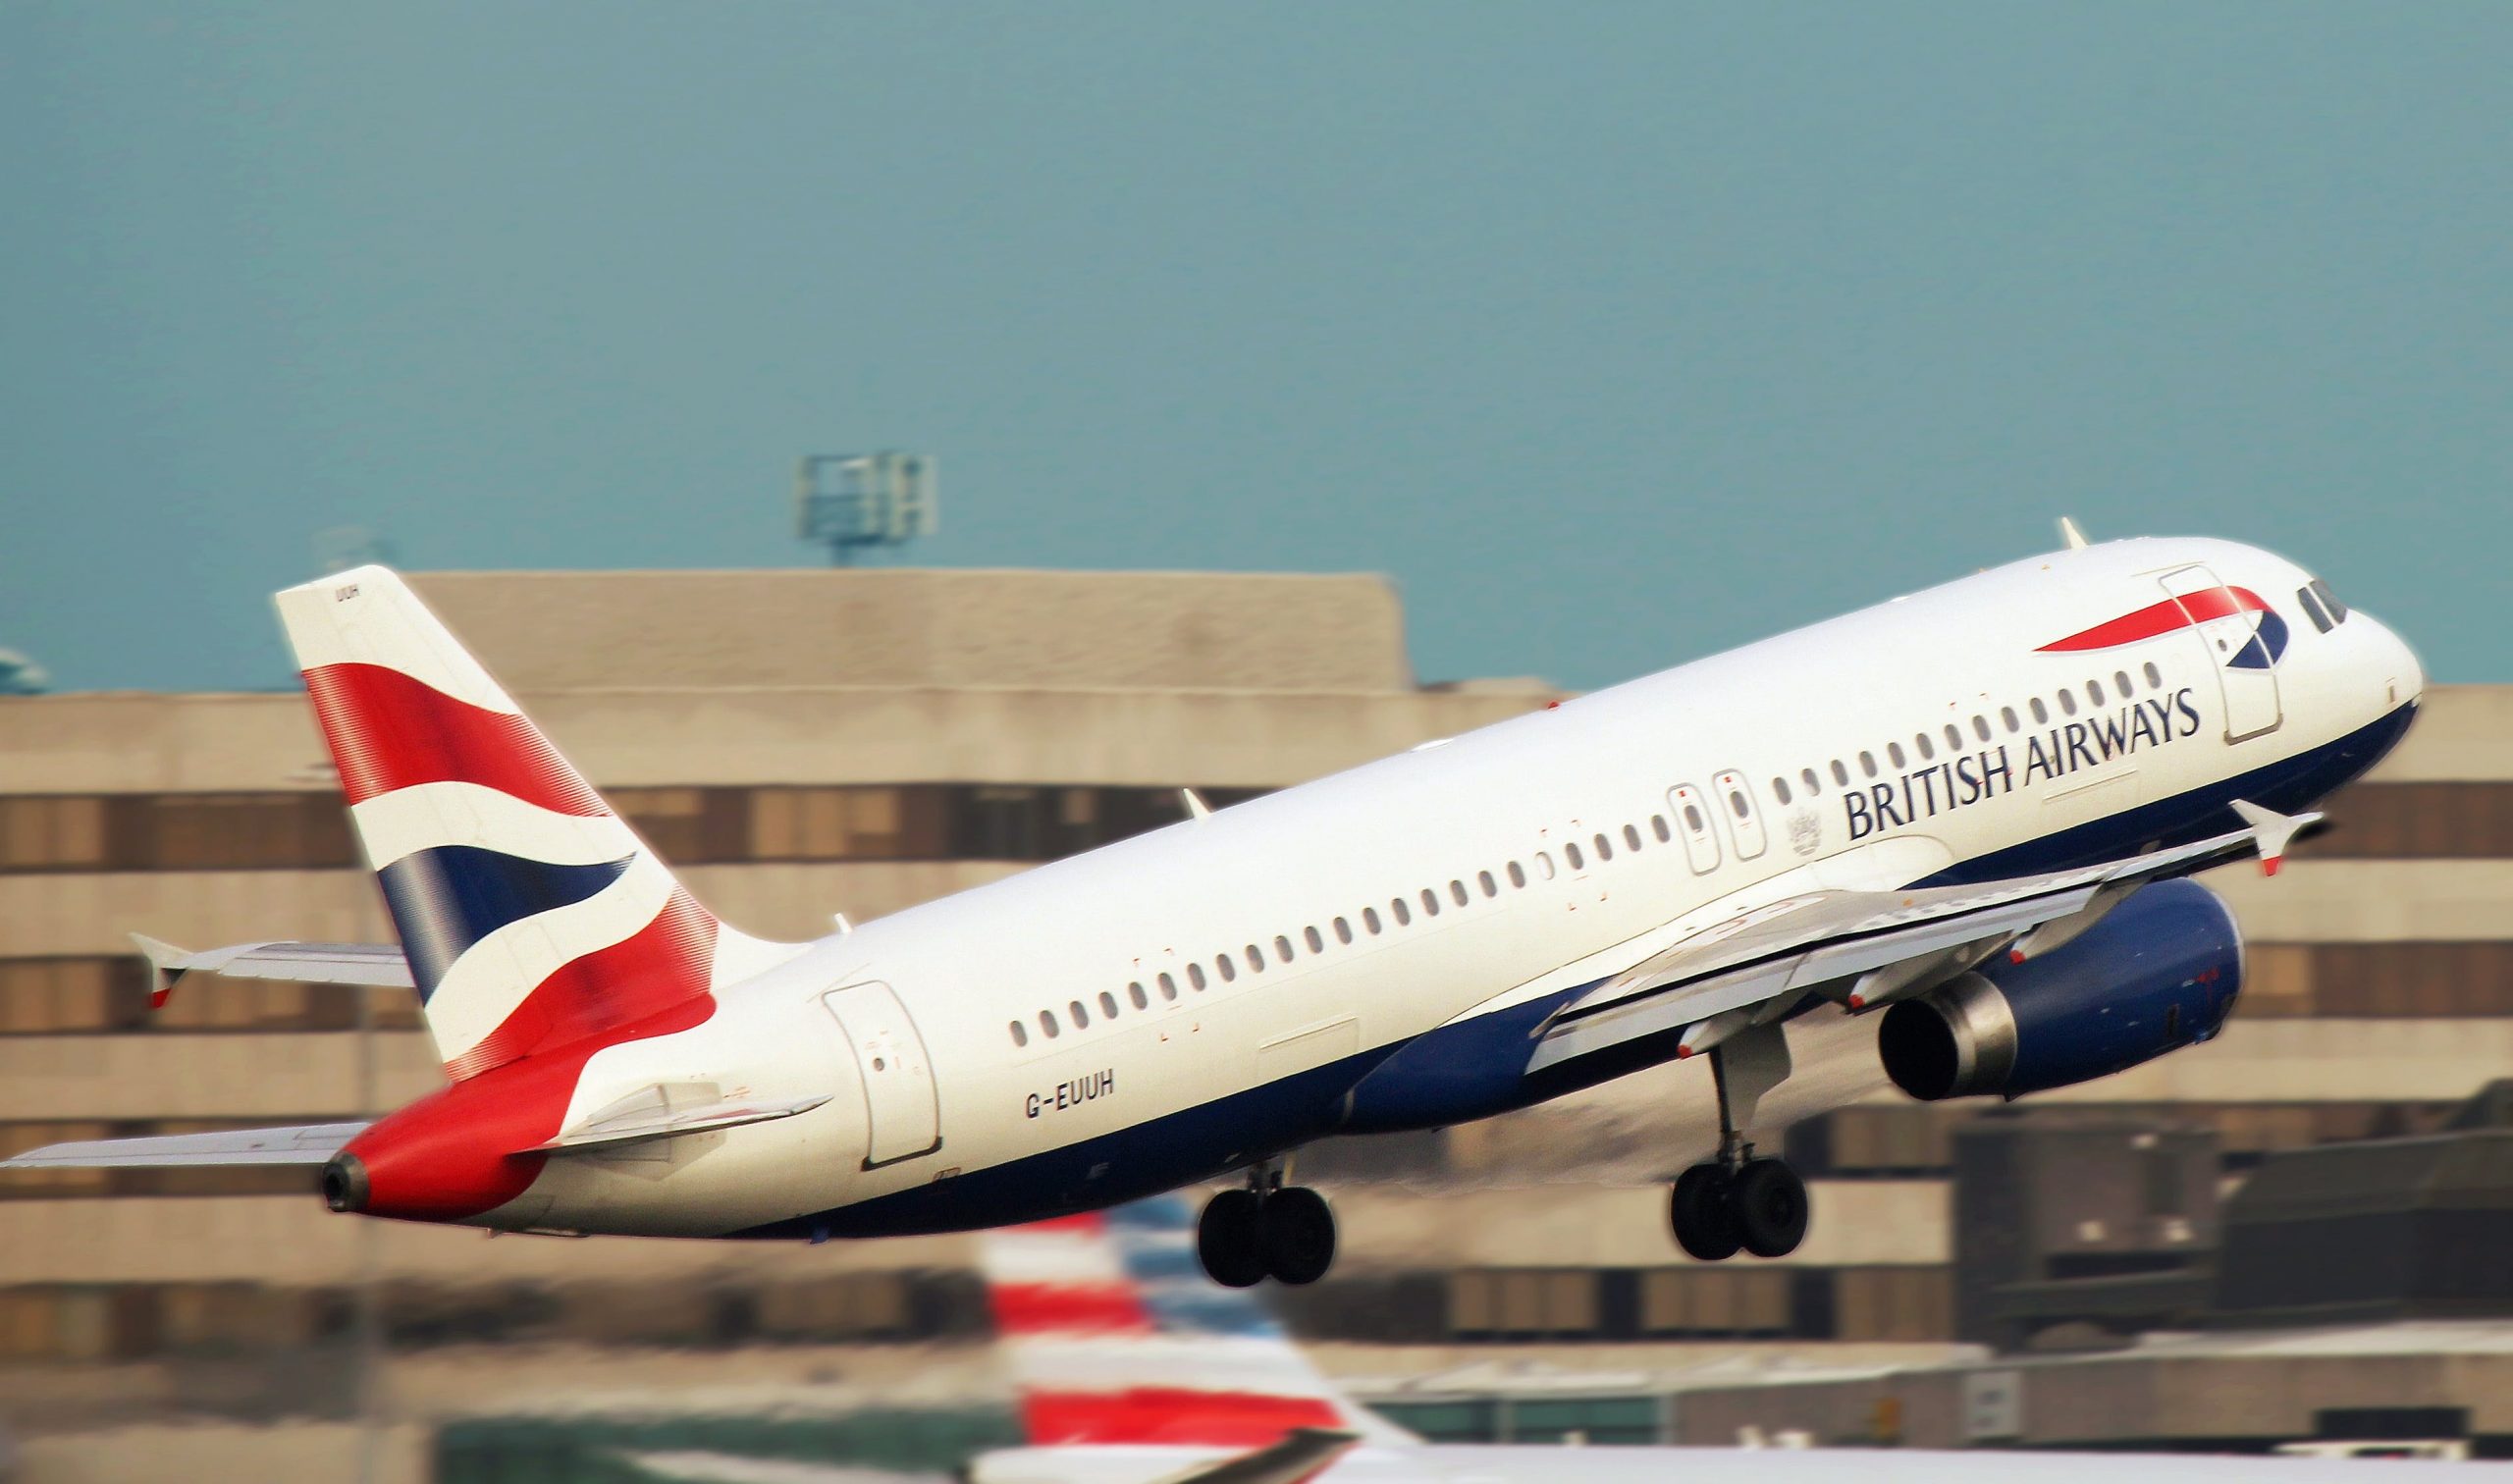 La compagnie des transports British Airways sanctionnée par les autorités pour pratiques inconvenantes en matière de protection des données de ses clients